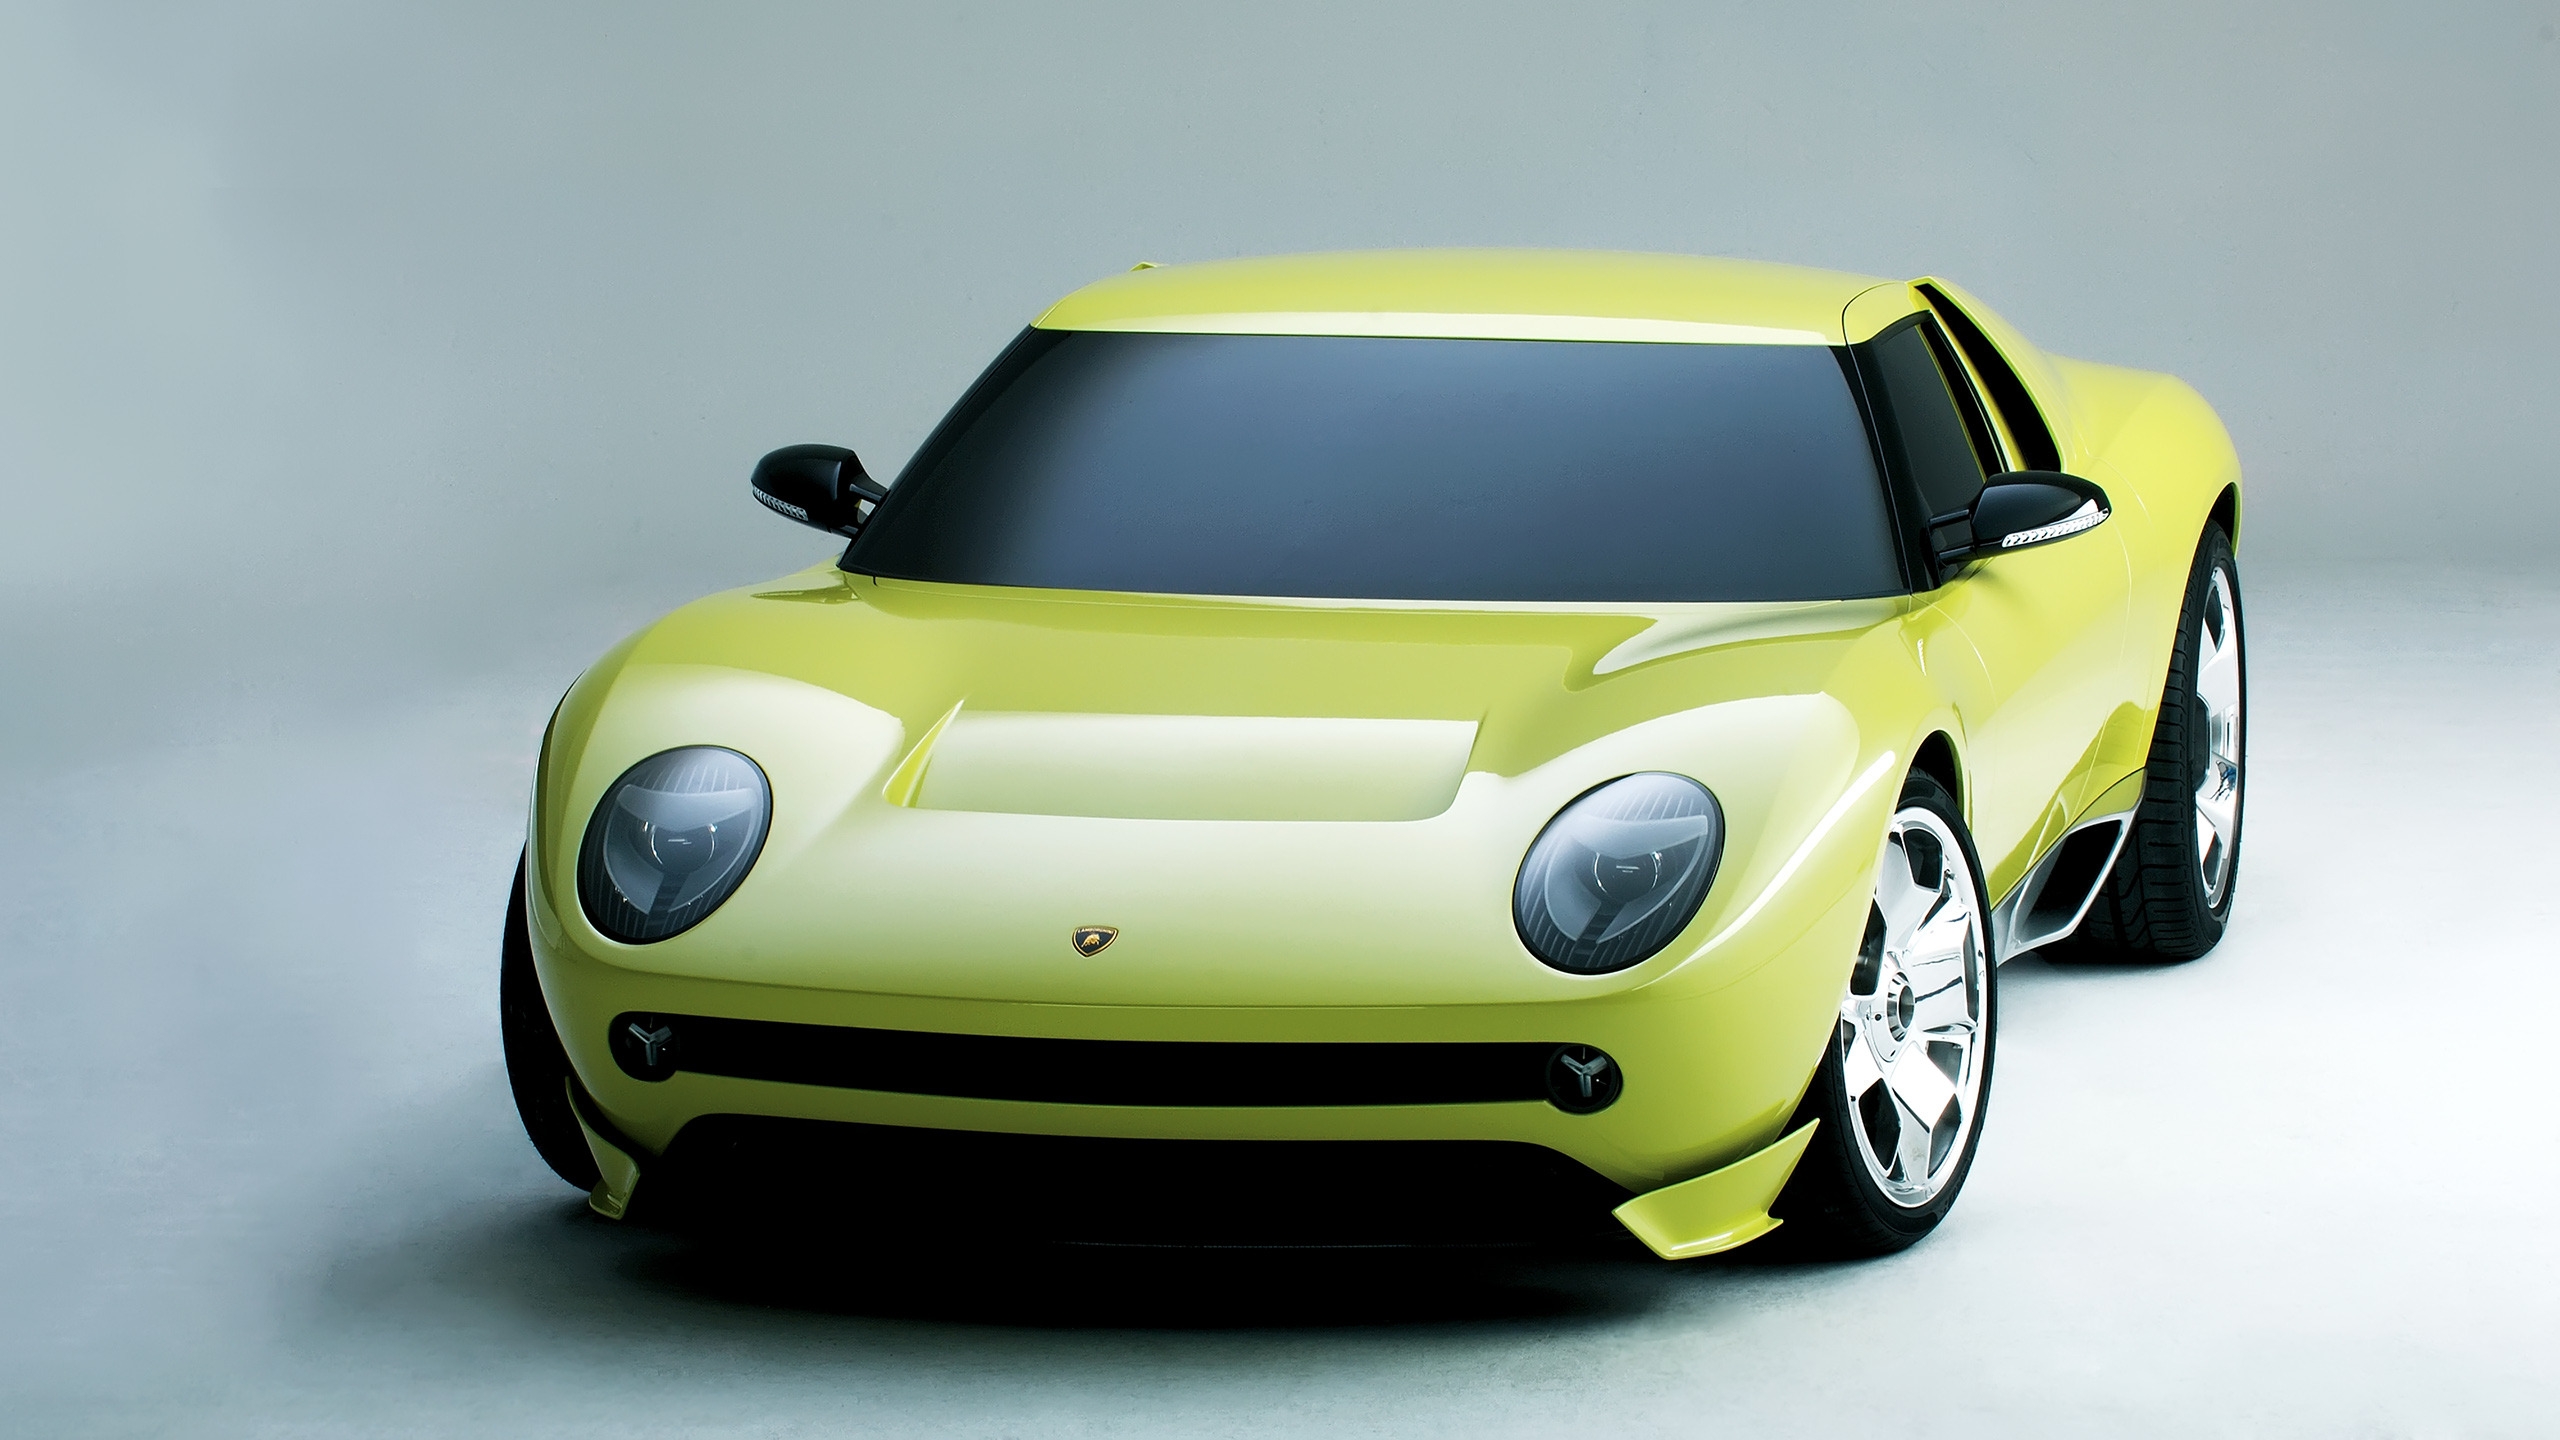 Lamborghini Miura Concept for 2560x1440 HDTV resolution